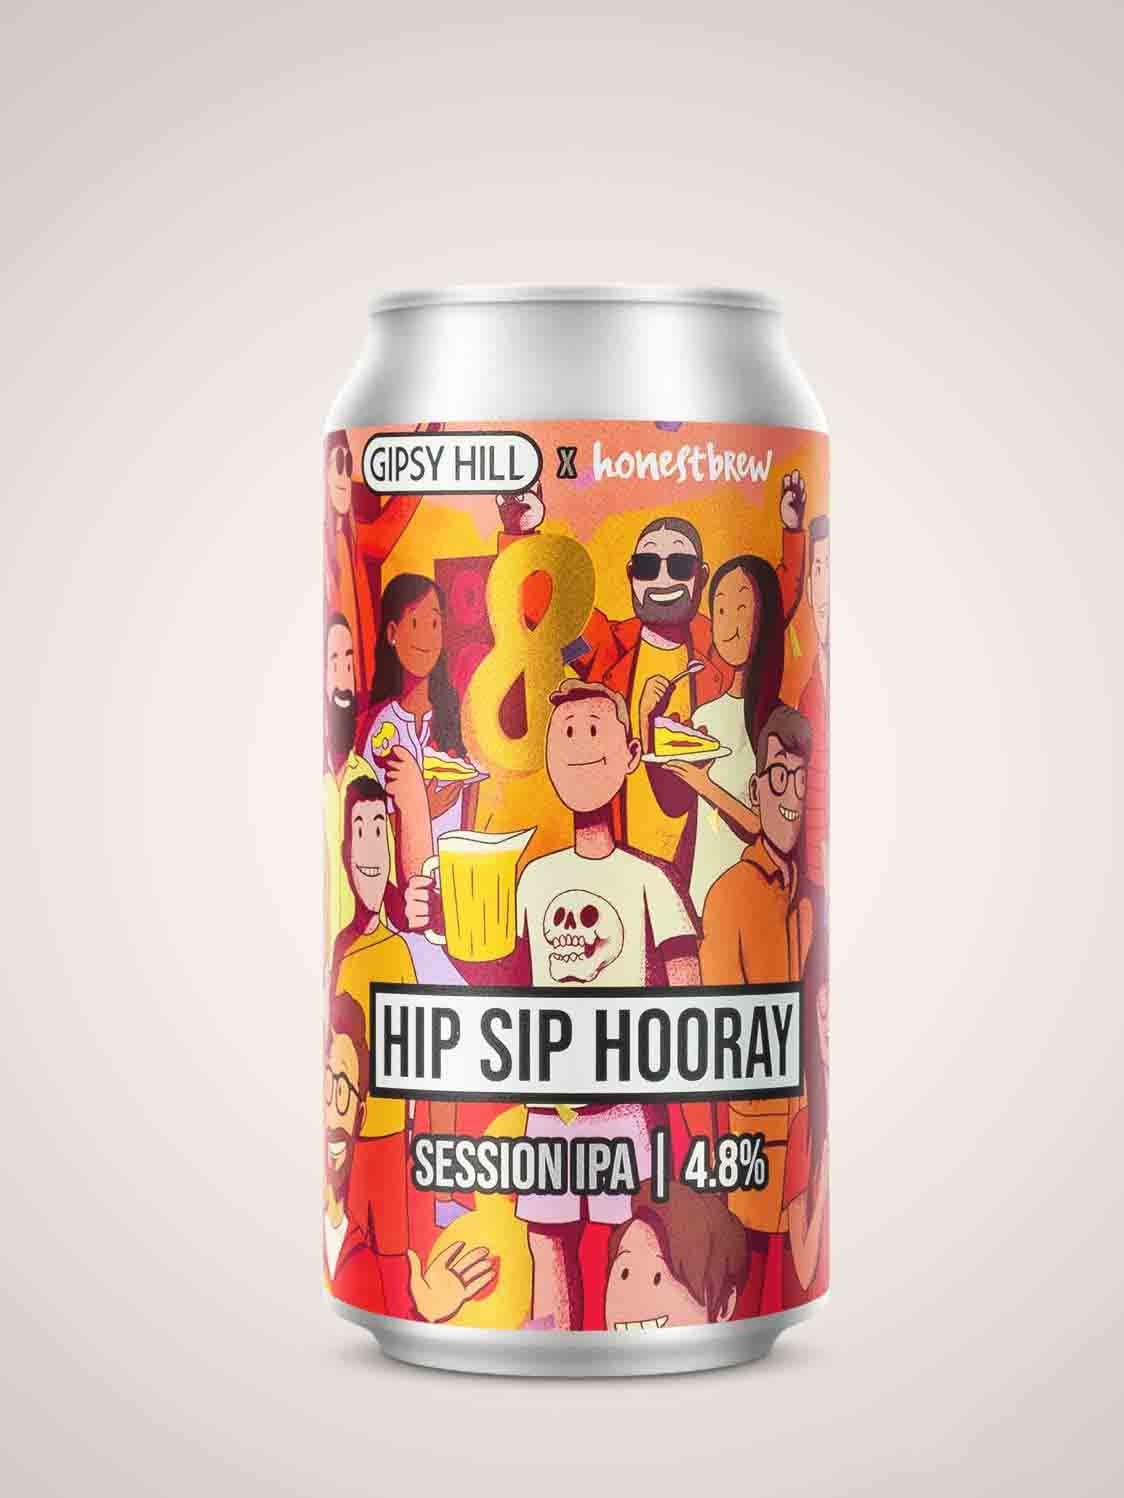 Gipsy Hill x HonestBrew - Hip Sip Hooray NE SIPA 4.8%